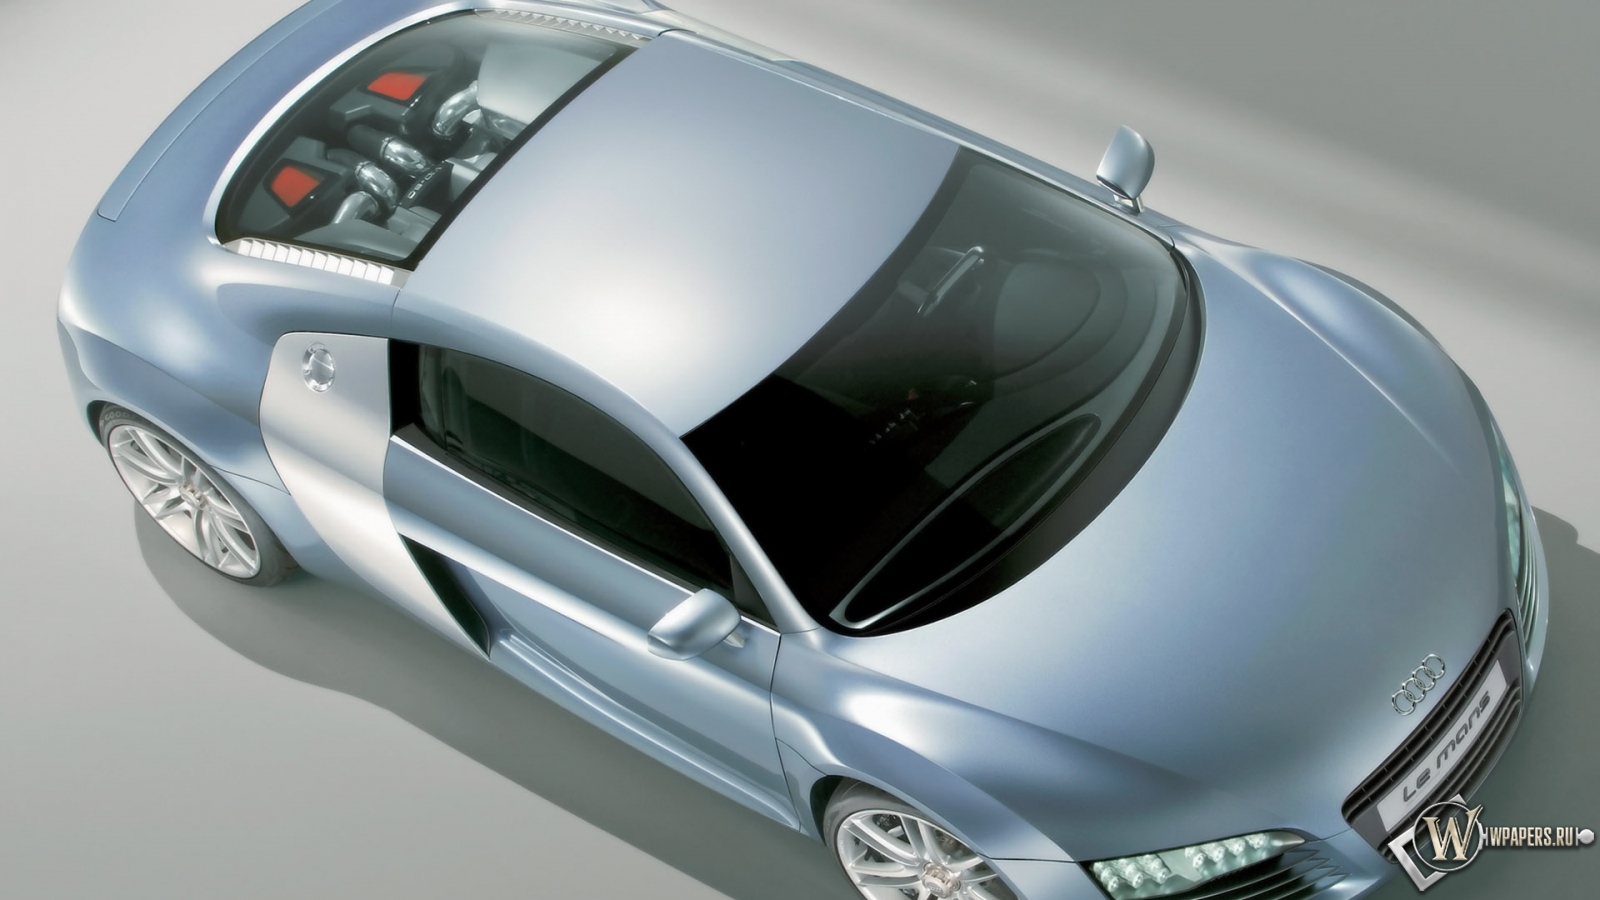 Audi Le Mans Quattro Concept - Top Front 1600x900